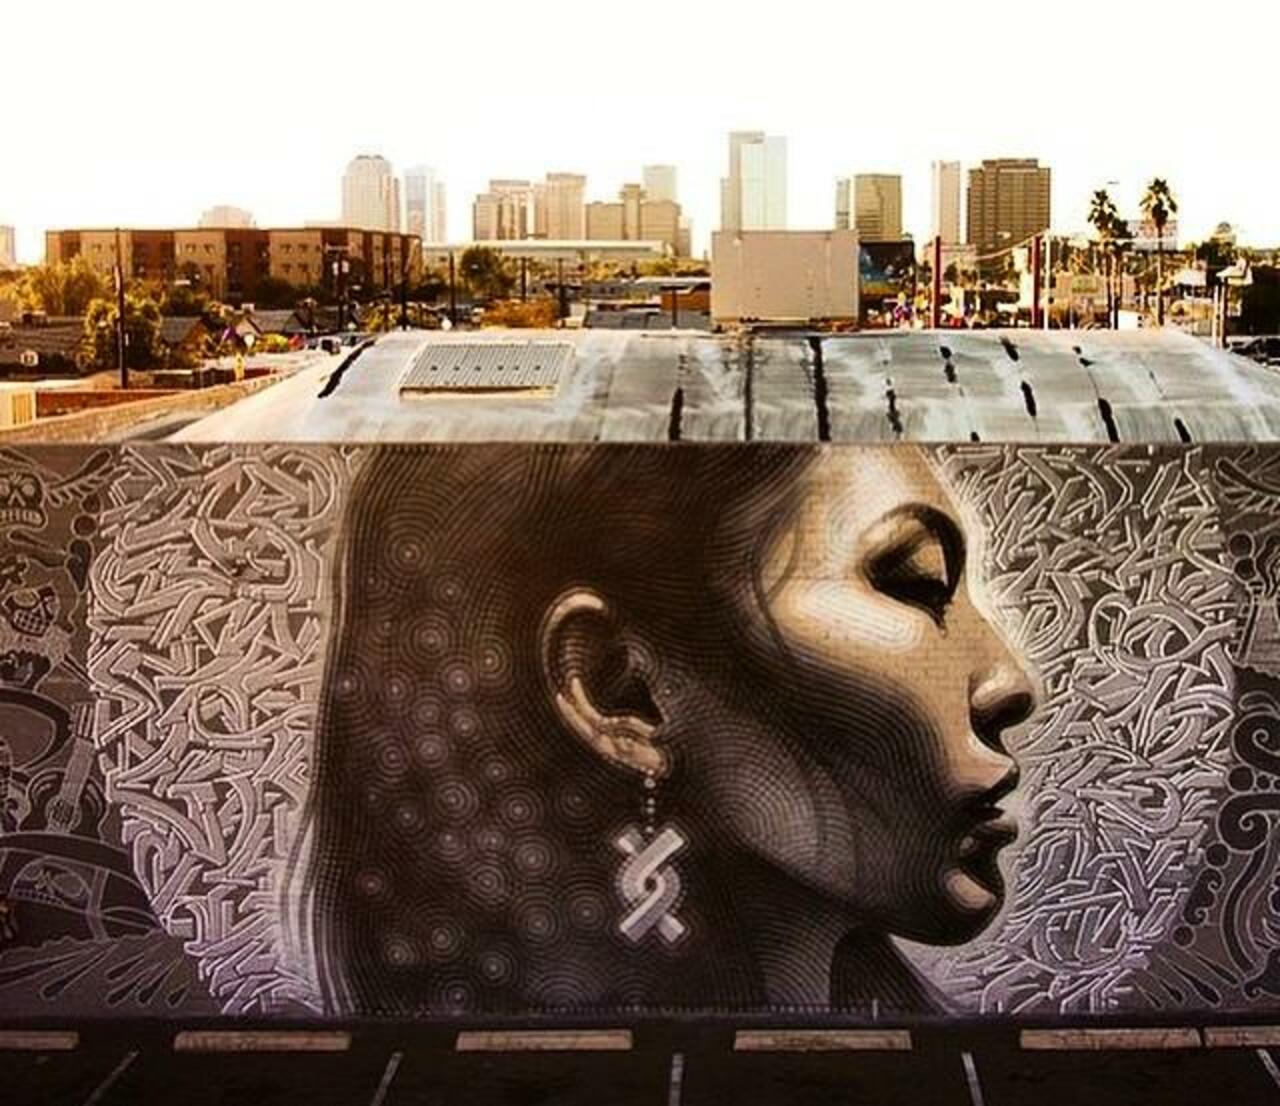 Latest Street Art work by El Mac in Phoenix, Arizona

#art #mural #graffiti #streetart http://t.co/5ioKV3OymM